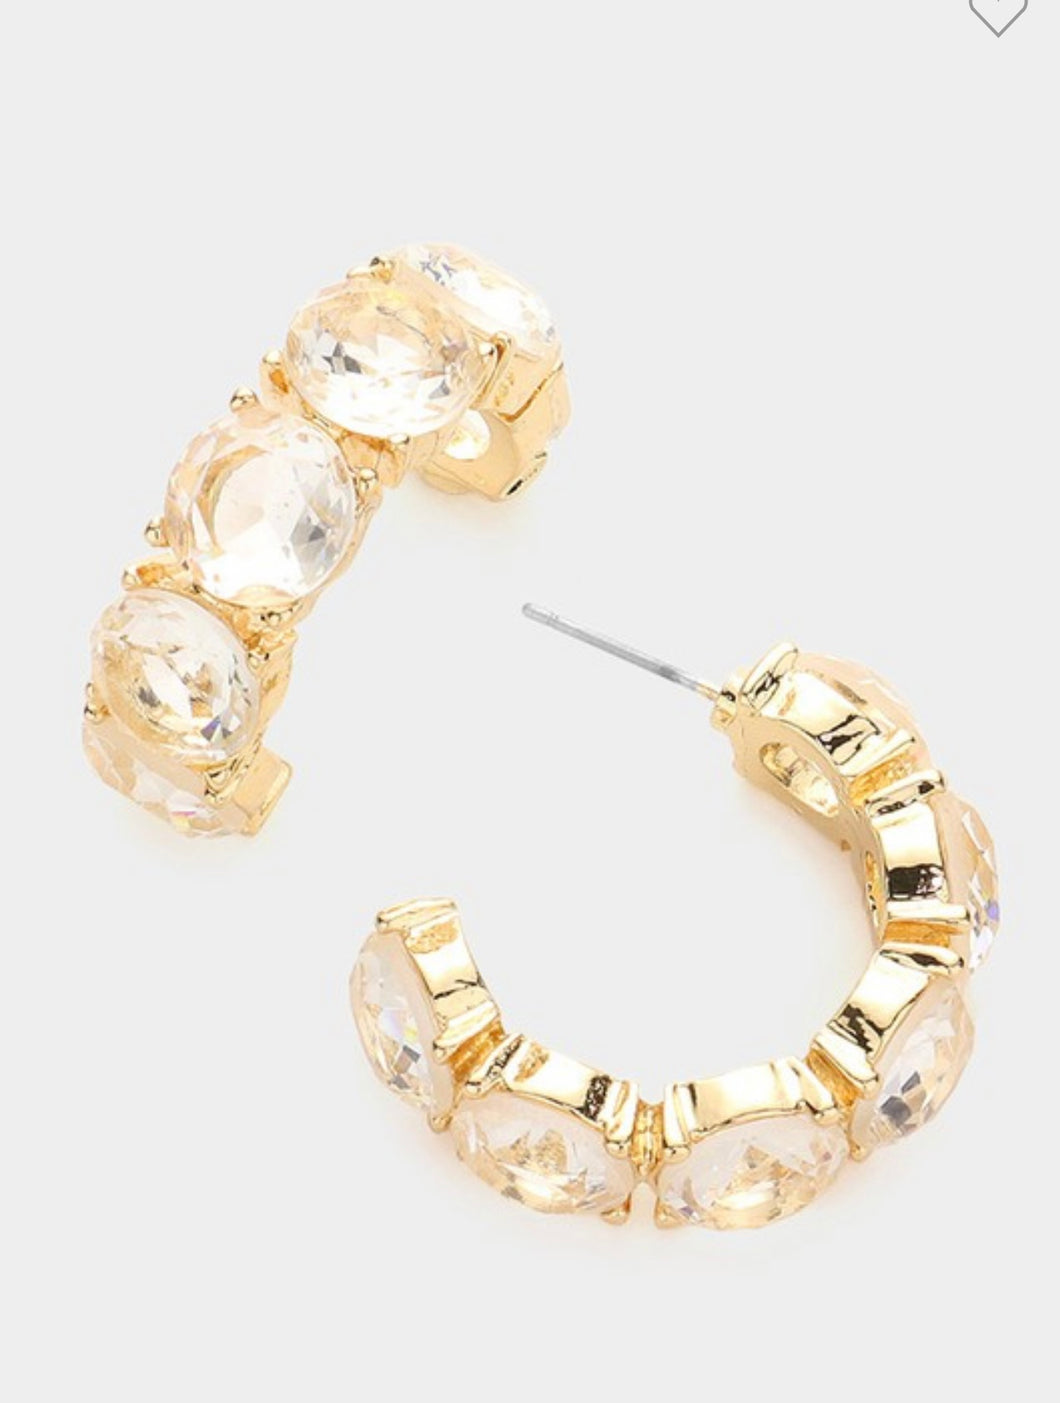 Gold diamond hoop earrings